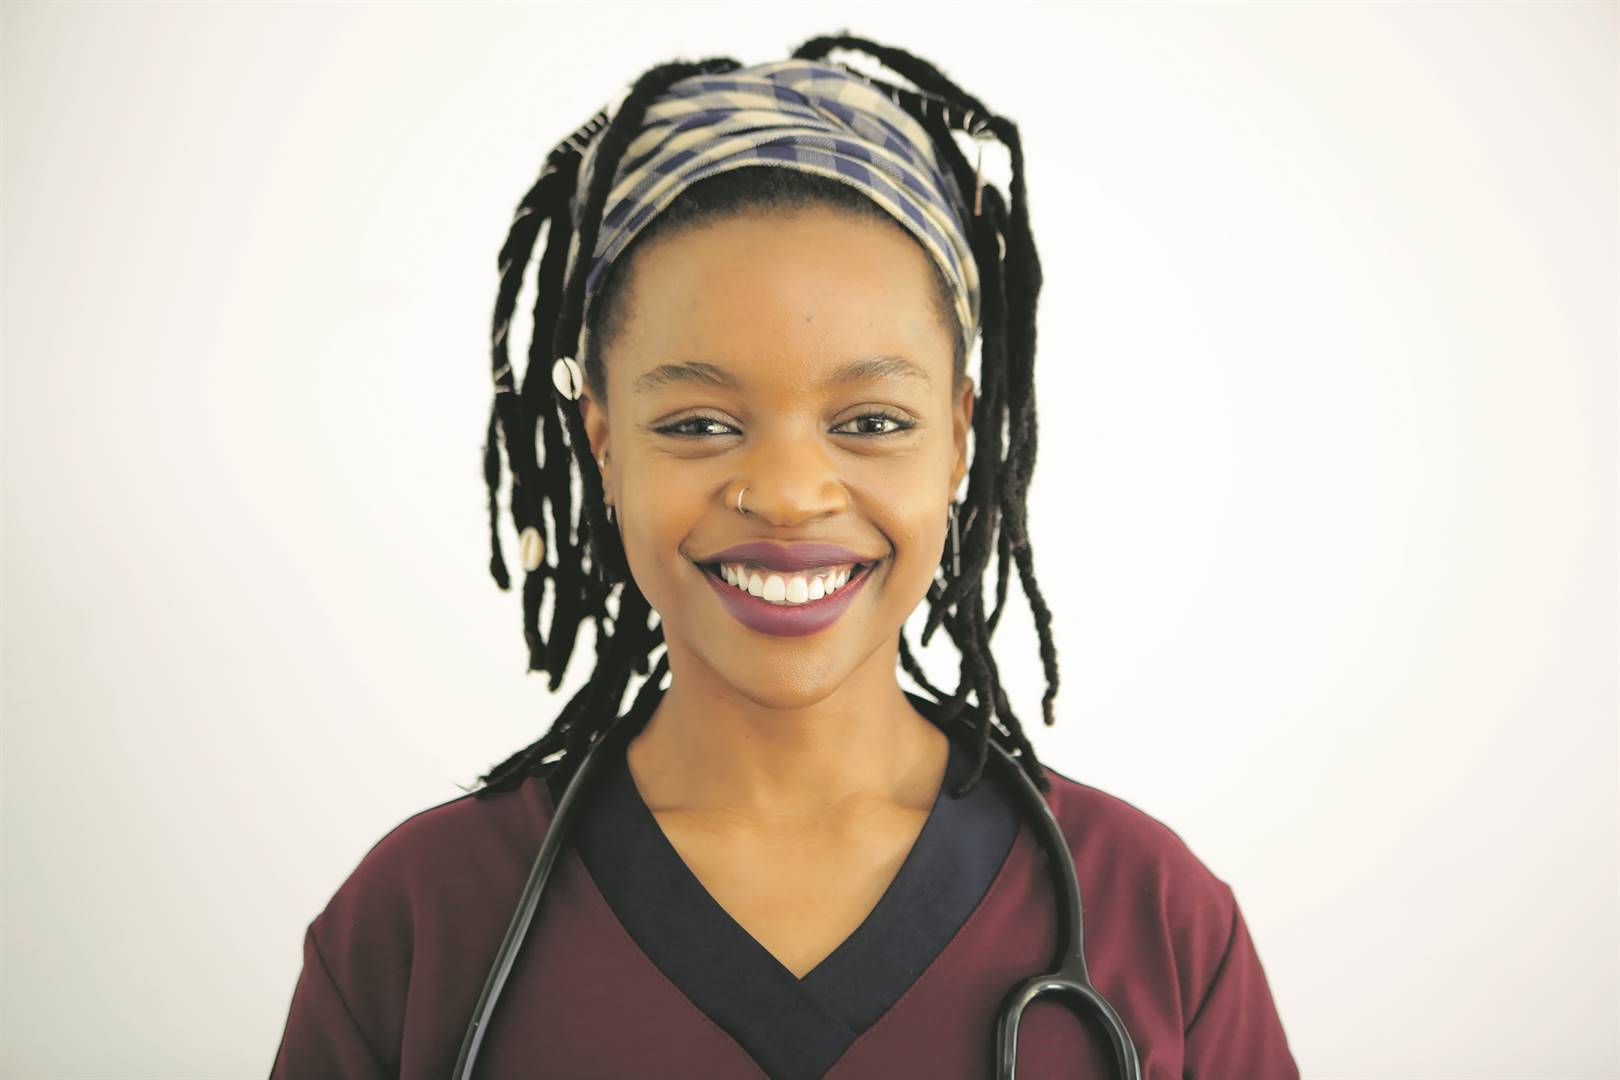 Yola Plaatjie plays as Dr Nangamso Jack on Durban Gen.